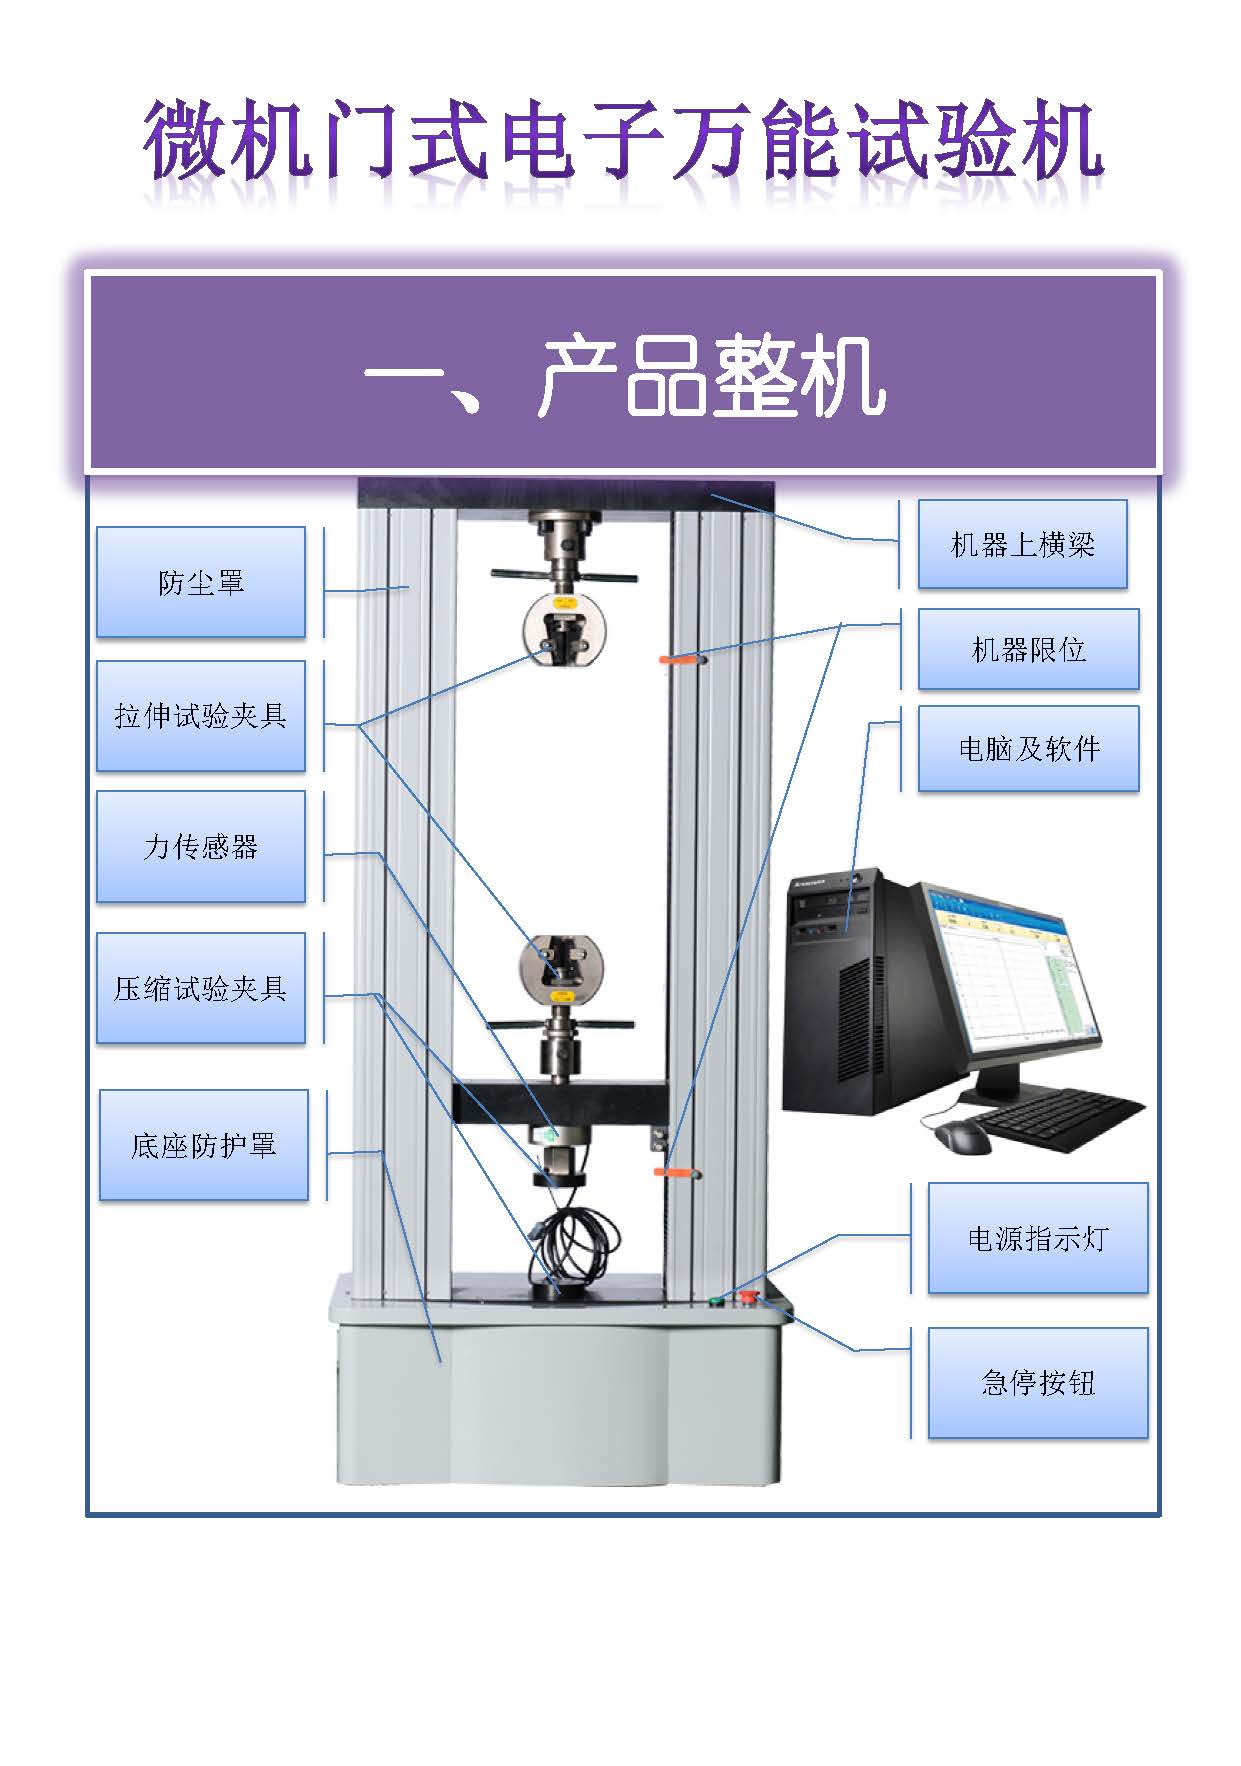 微机门式-国产配置 中文 所有型号_页面_01.jpg